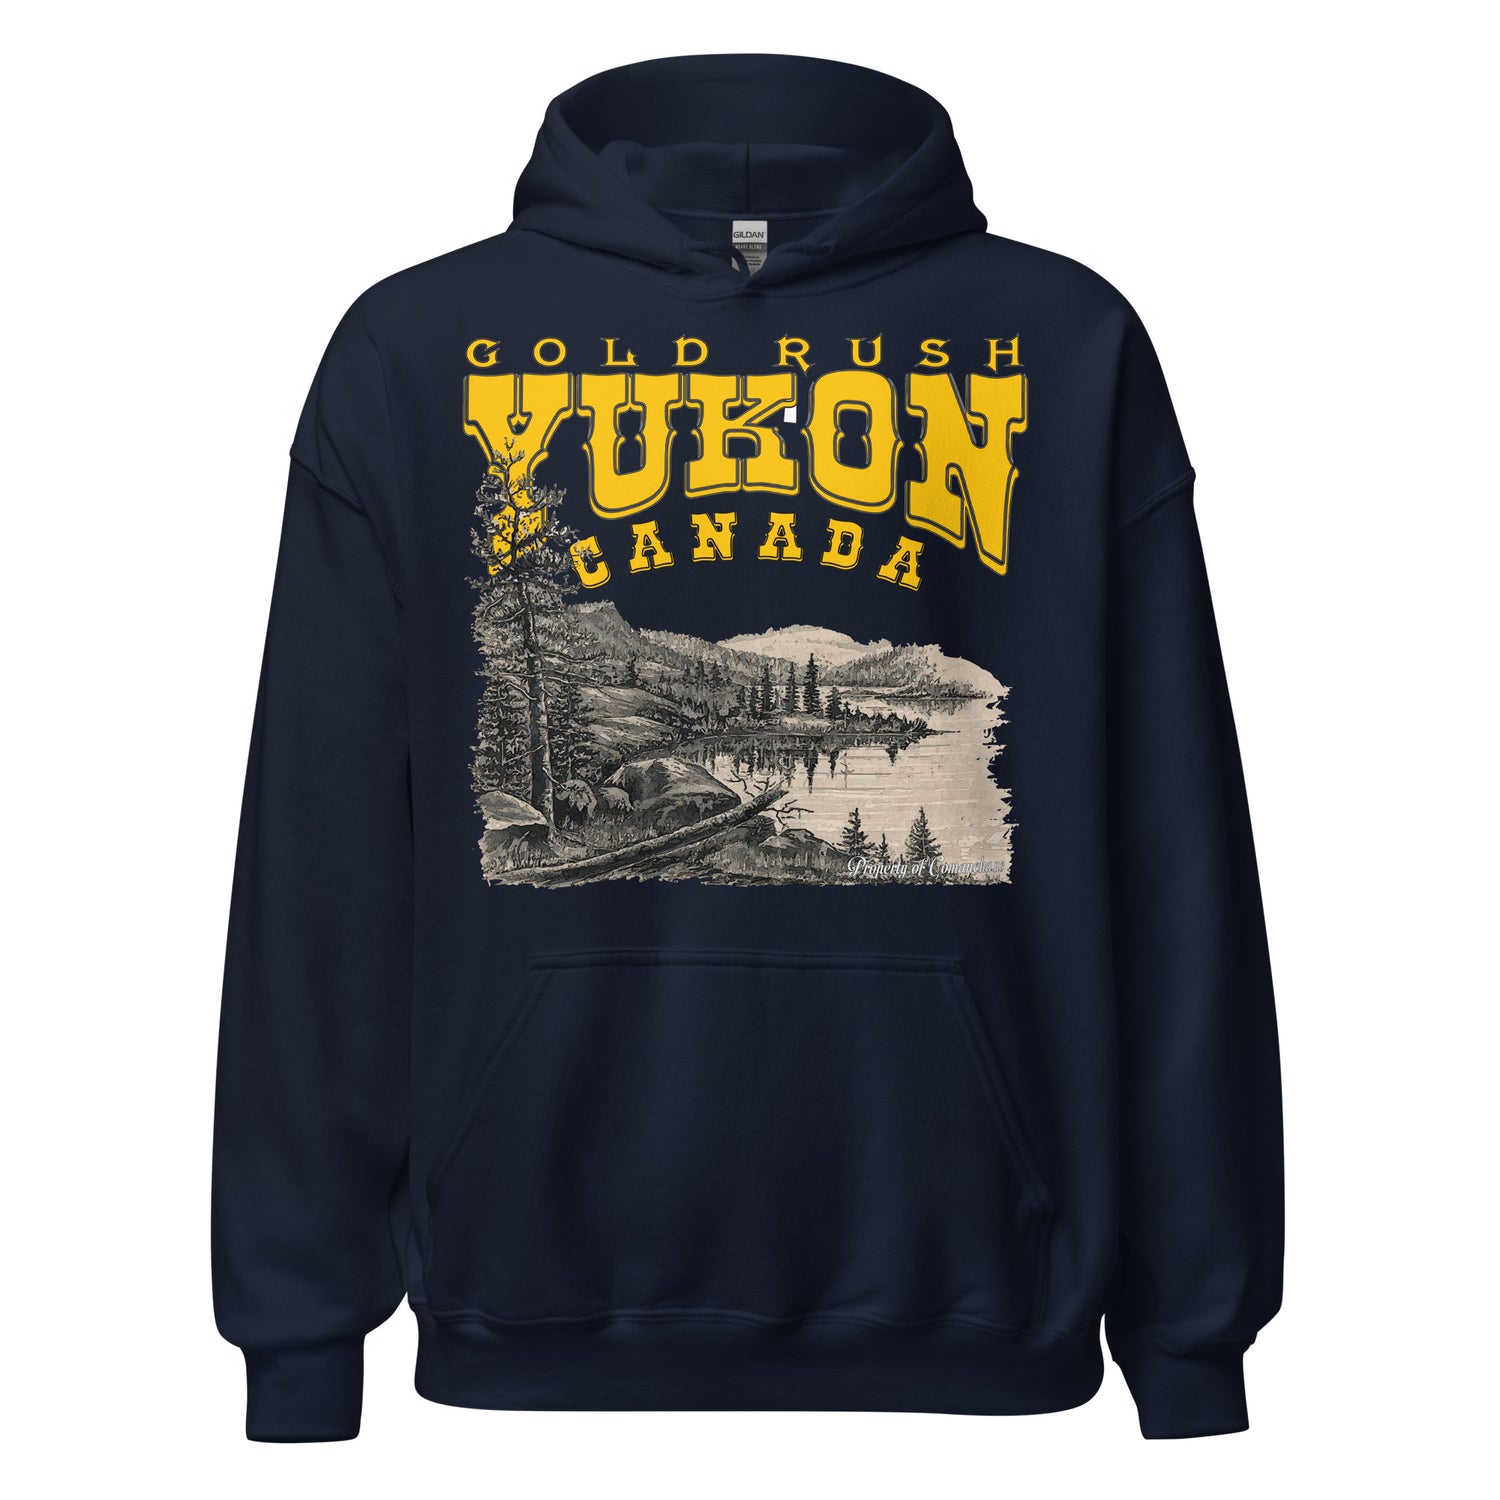 YUKON Gold Rush Hoodie, Yukon Hoodie, Comancha T-shirt Store, gold rush t-shirt,gold rush hoodie, Yukon Sweatshirt,